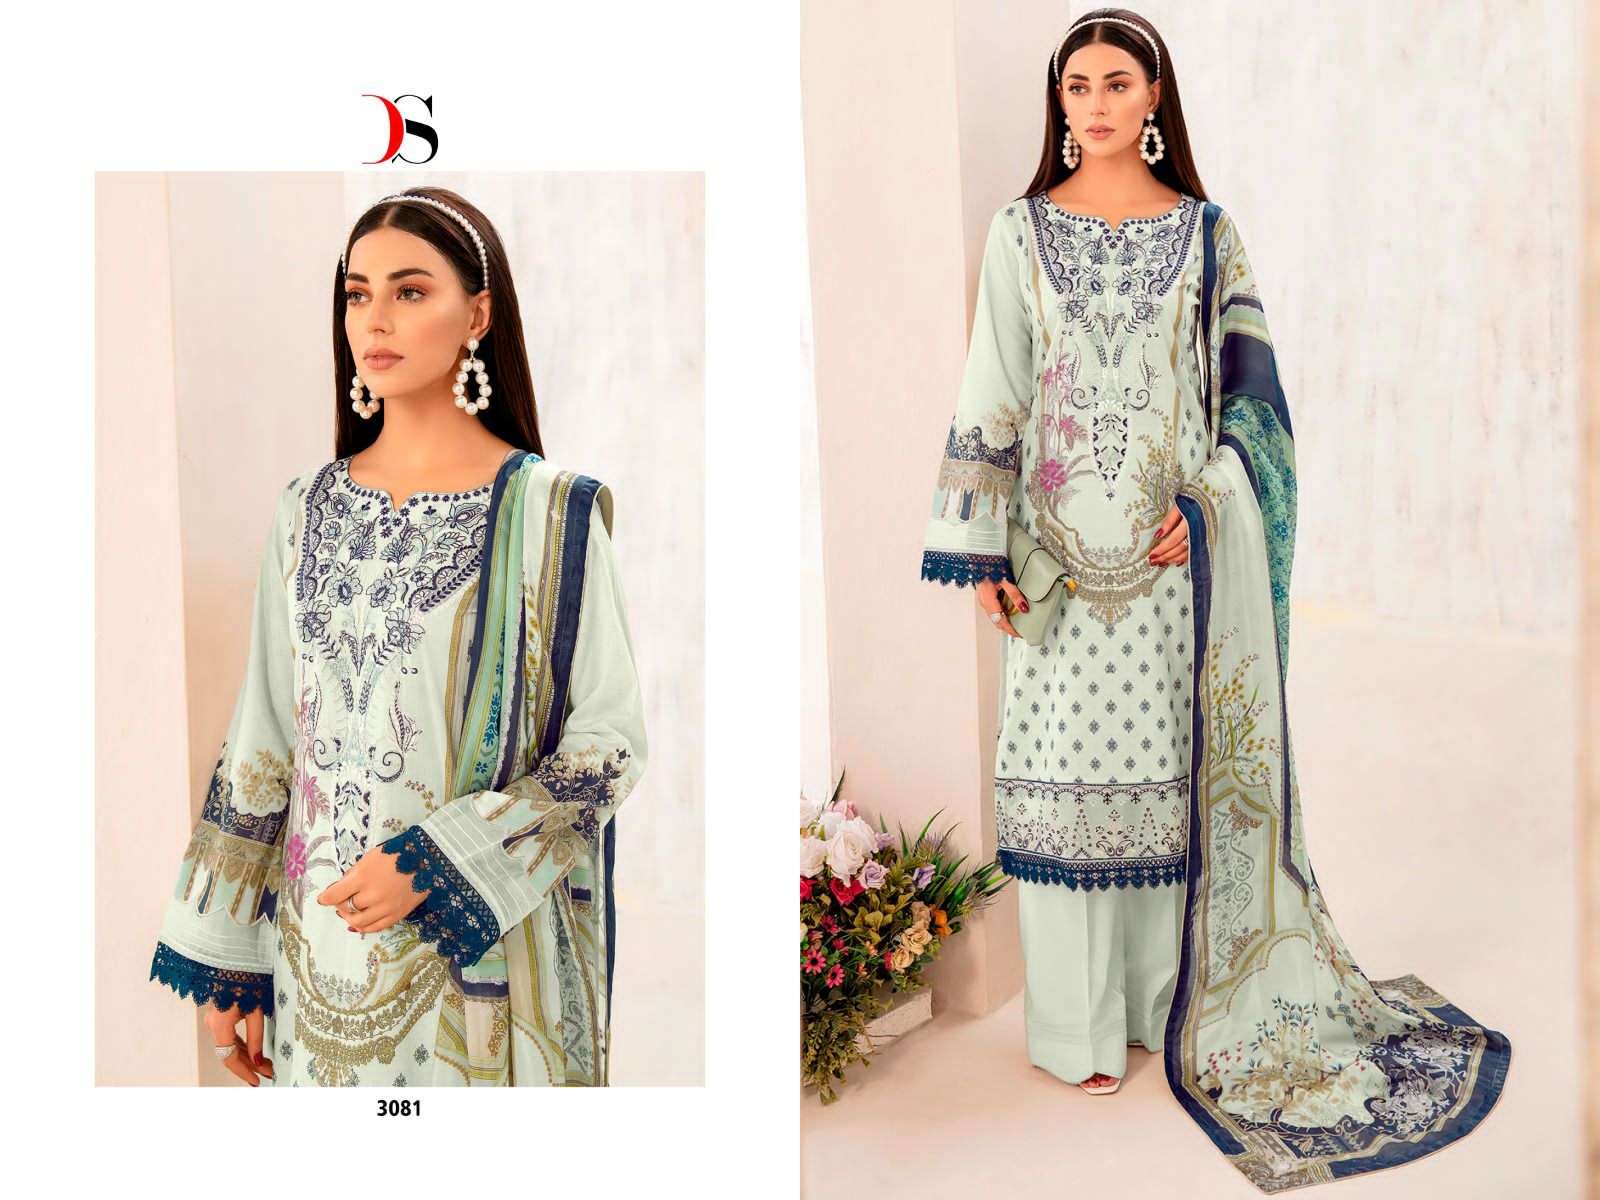 deepsy suits cheveron vol-7 nx pure cotton designer pakistani salwar suits catalogue manufacturer surat